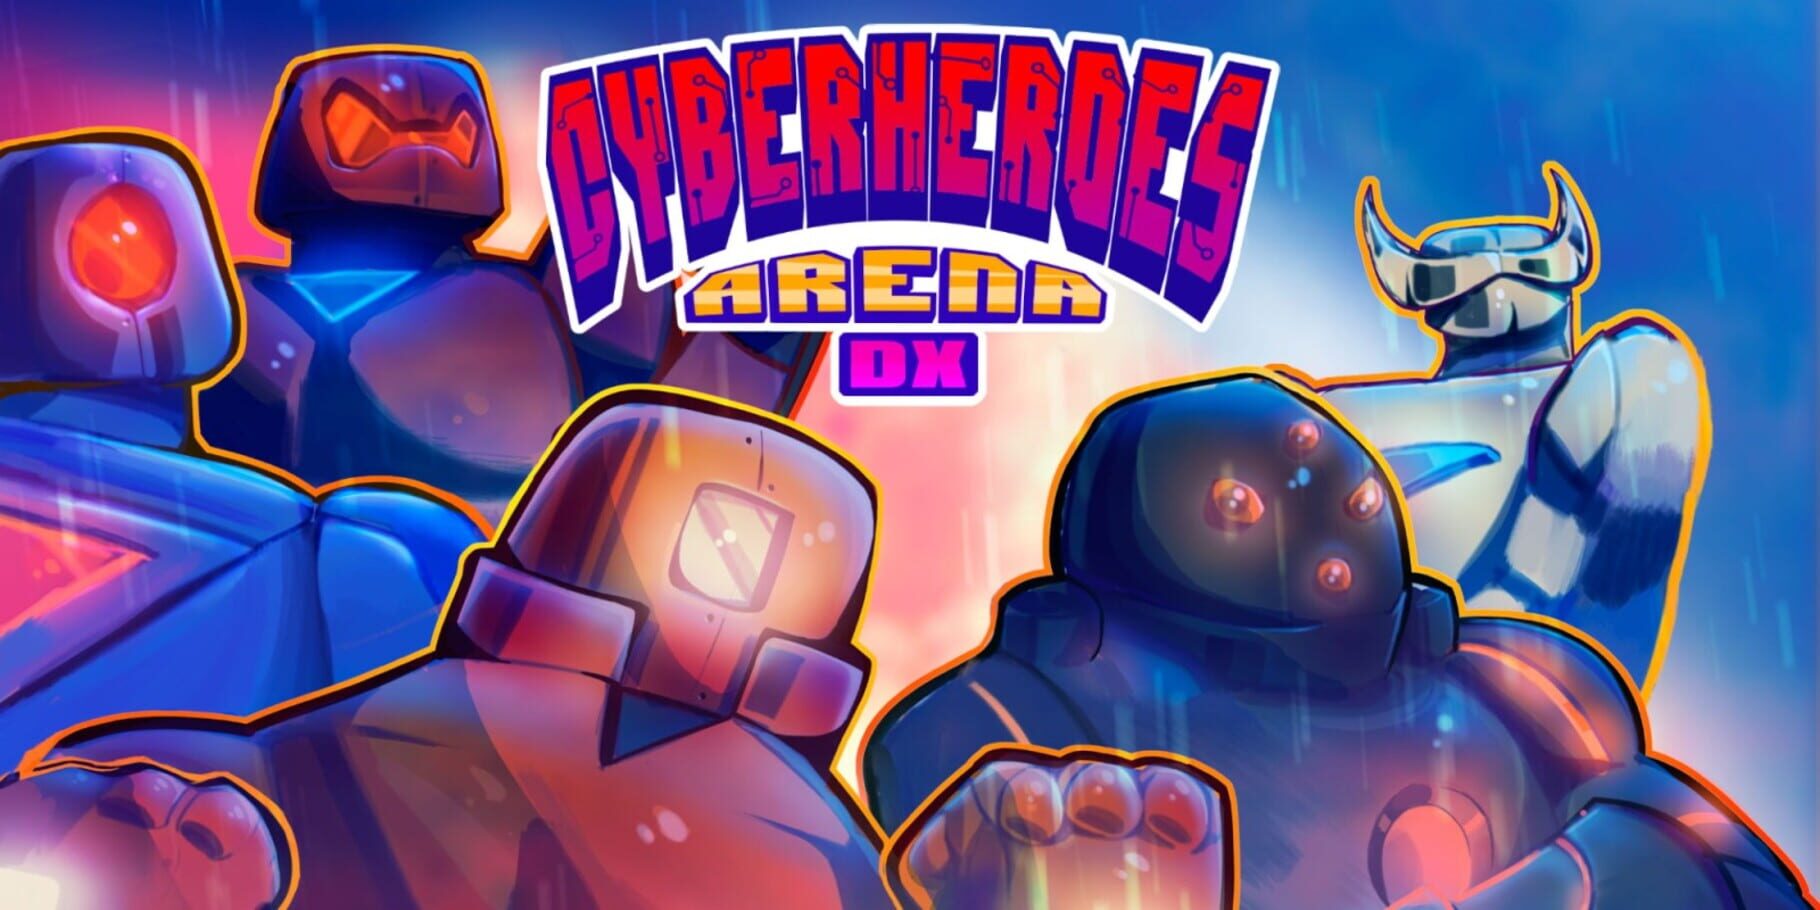 CyberHeroes Arena DX artwork